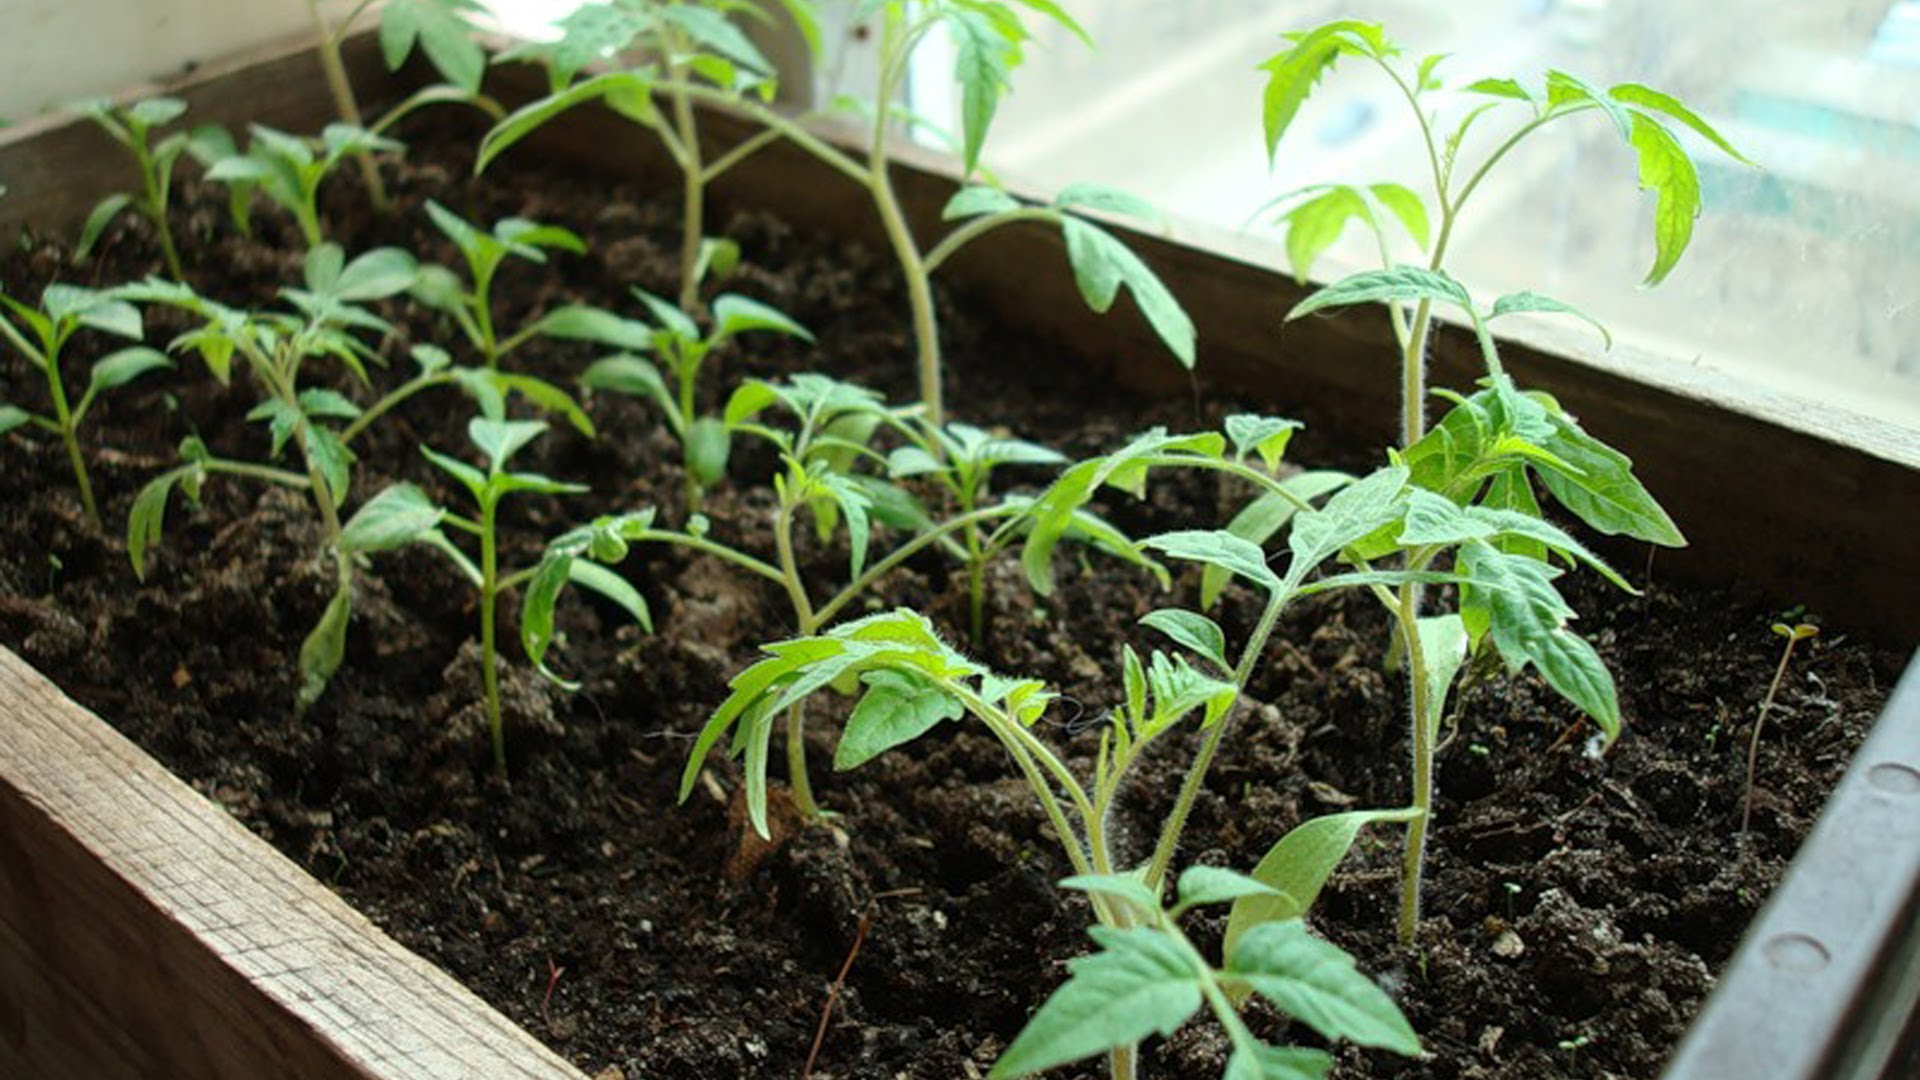 Правила посадки и выращивания крупноплодного томата Бабушкино